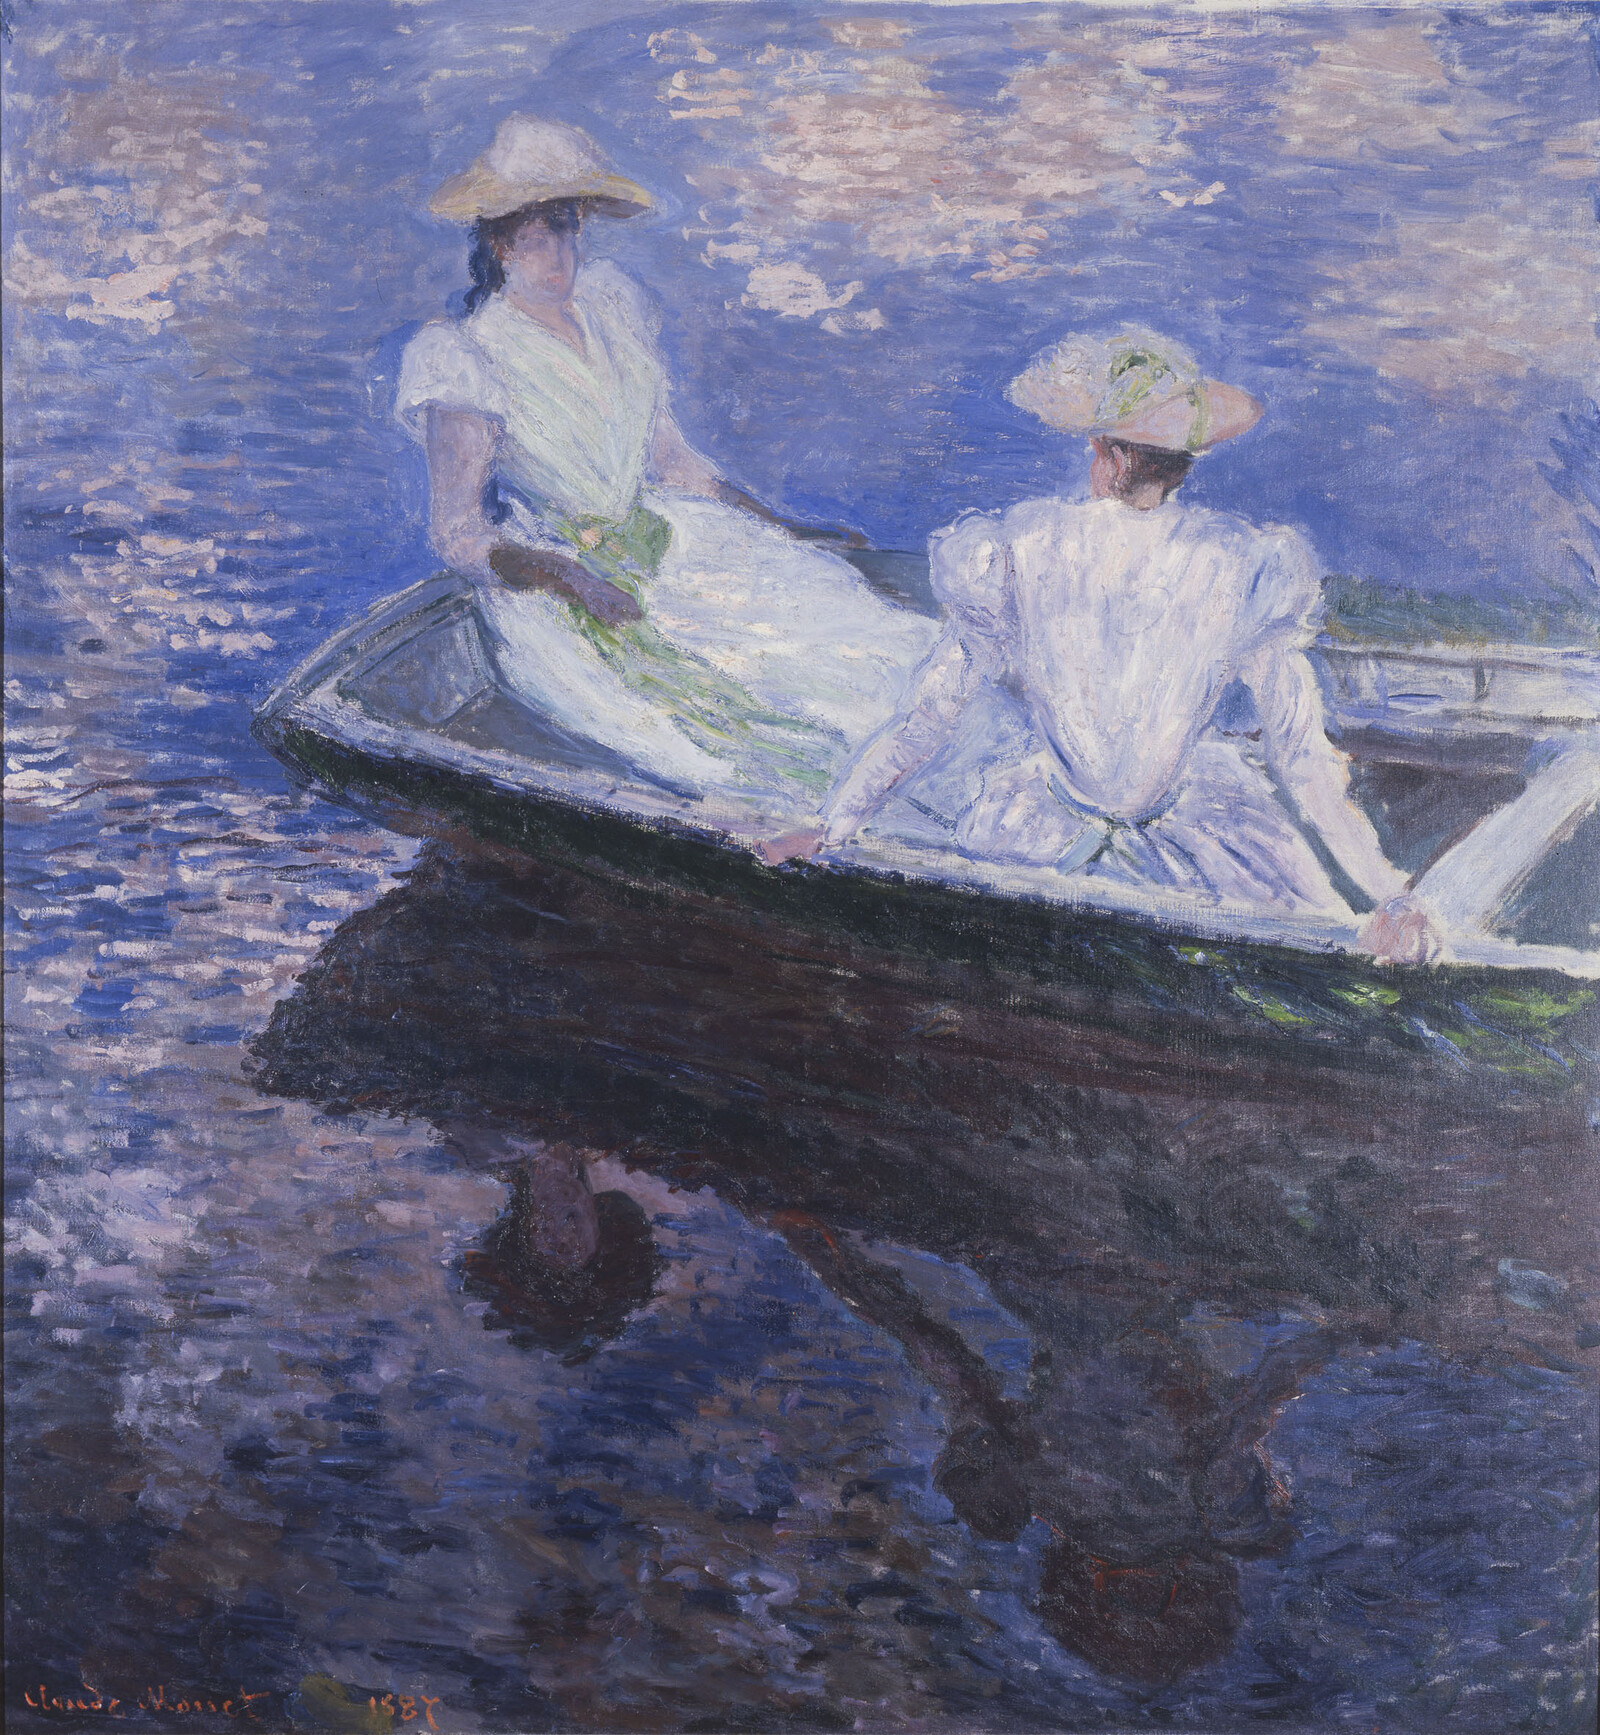 Claude Monet, Sur le bateau (Jeunes filles en barque), 1887. The National Museum of Western Art, Tokyo. Matsukata Collection. 